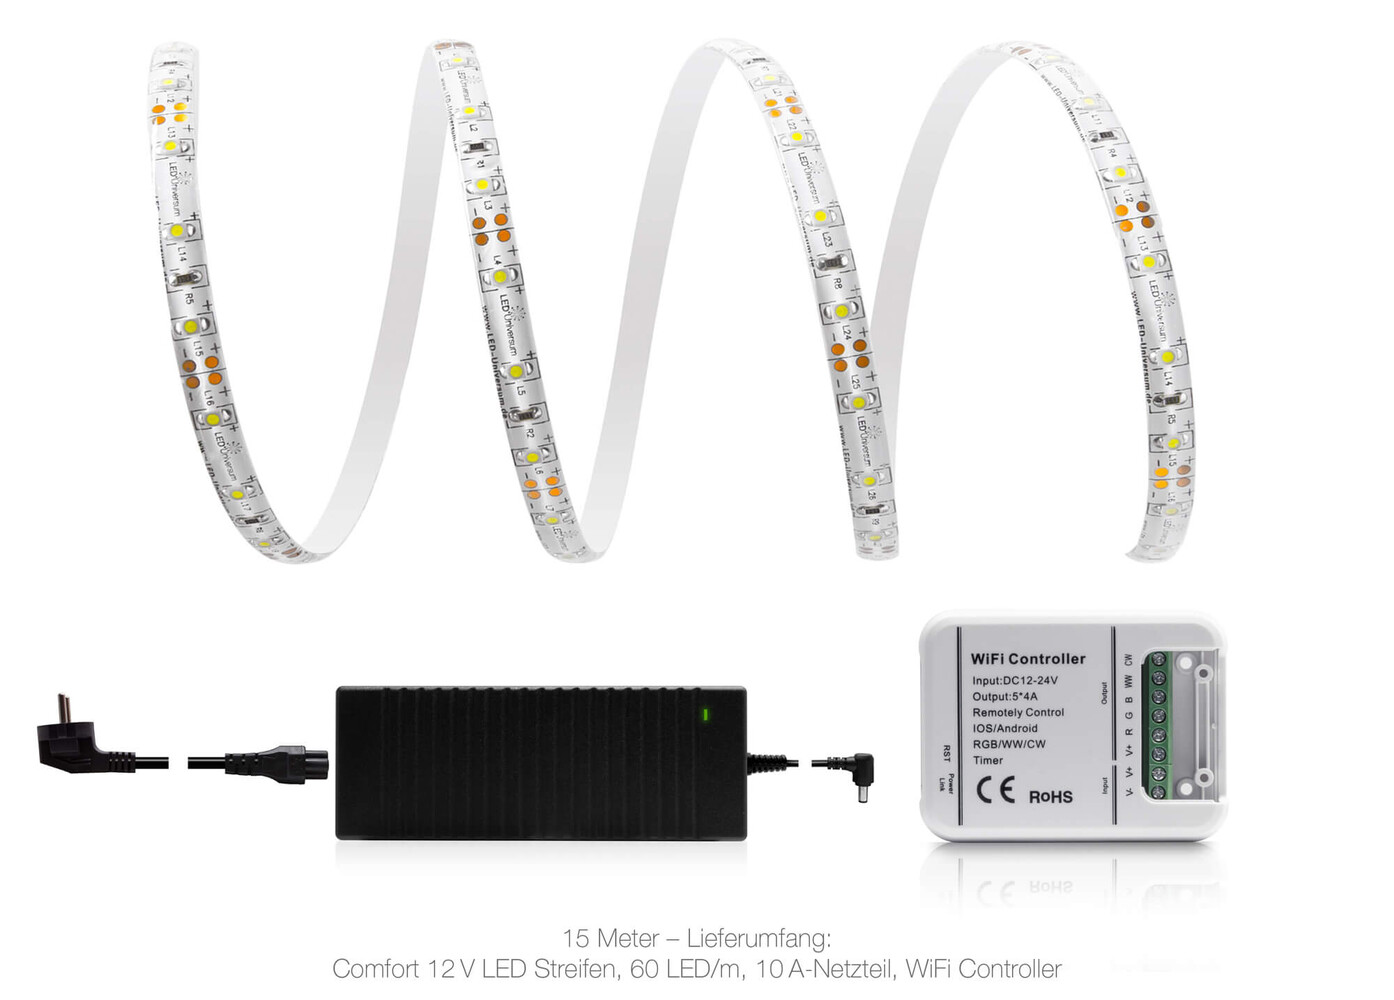 Hochwertiger LED Streifen von LED Universum, kaltweiß und wasserdicht gemäß IP65 Standard